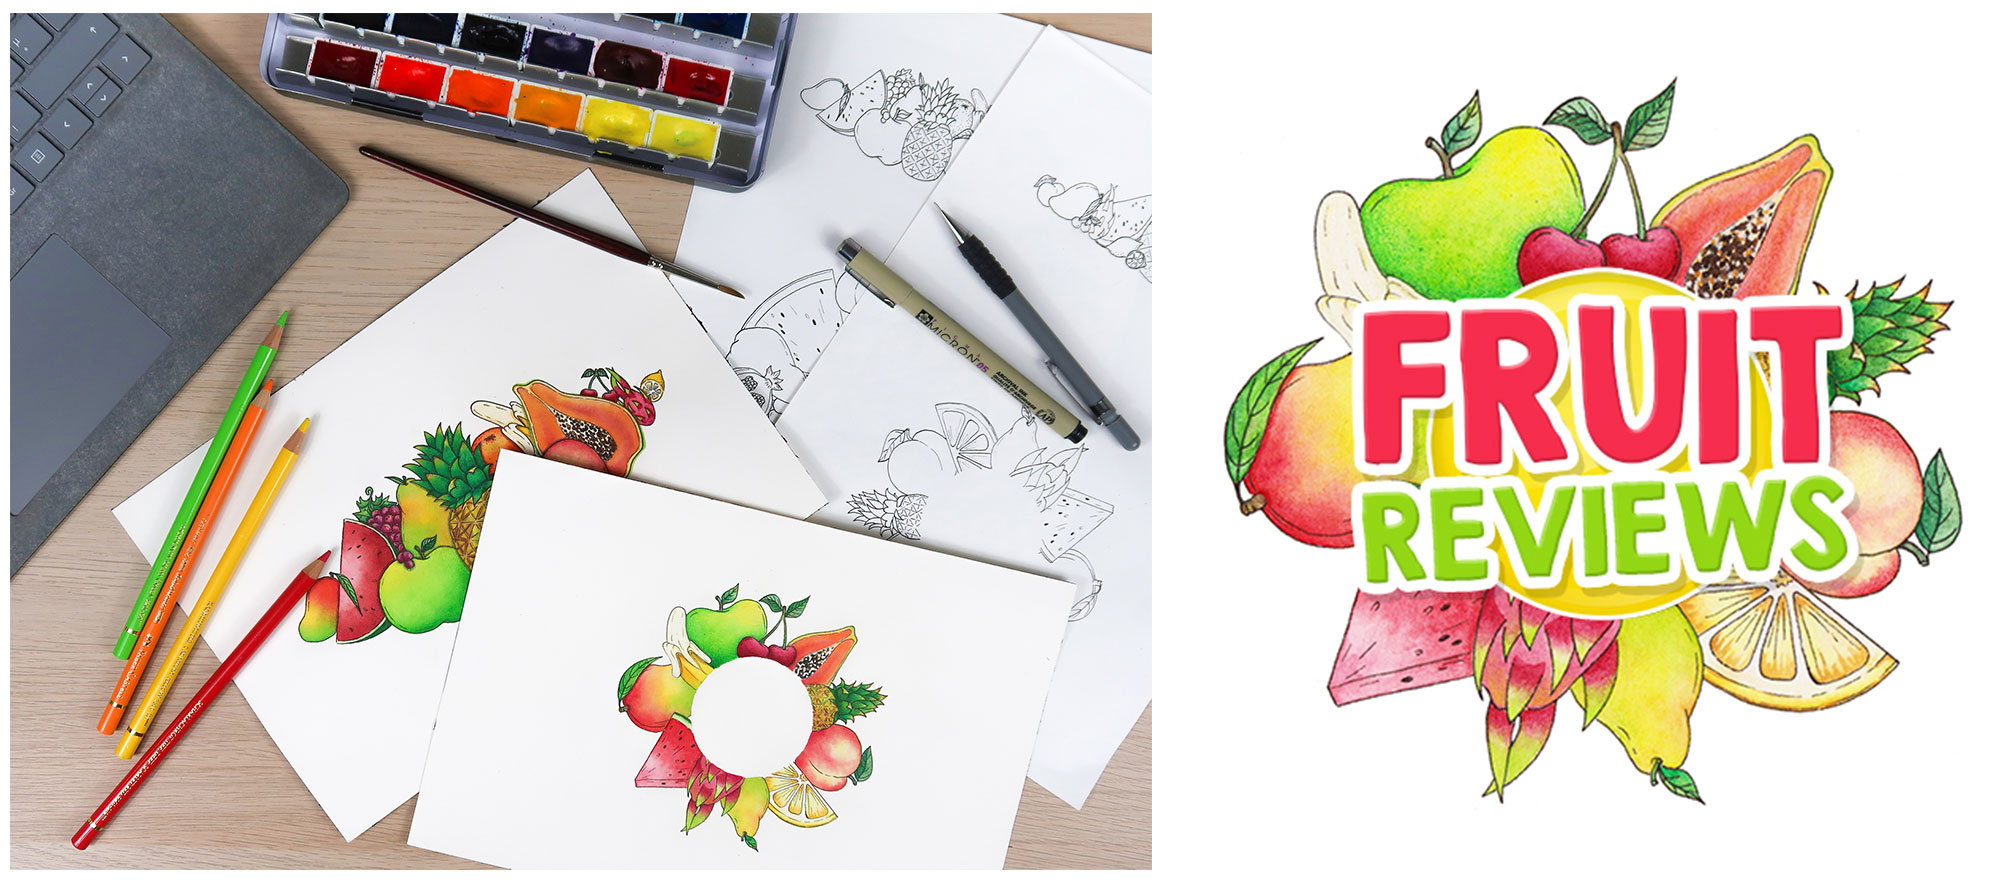 logo-fruit-reviews